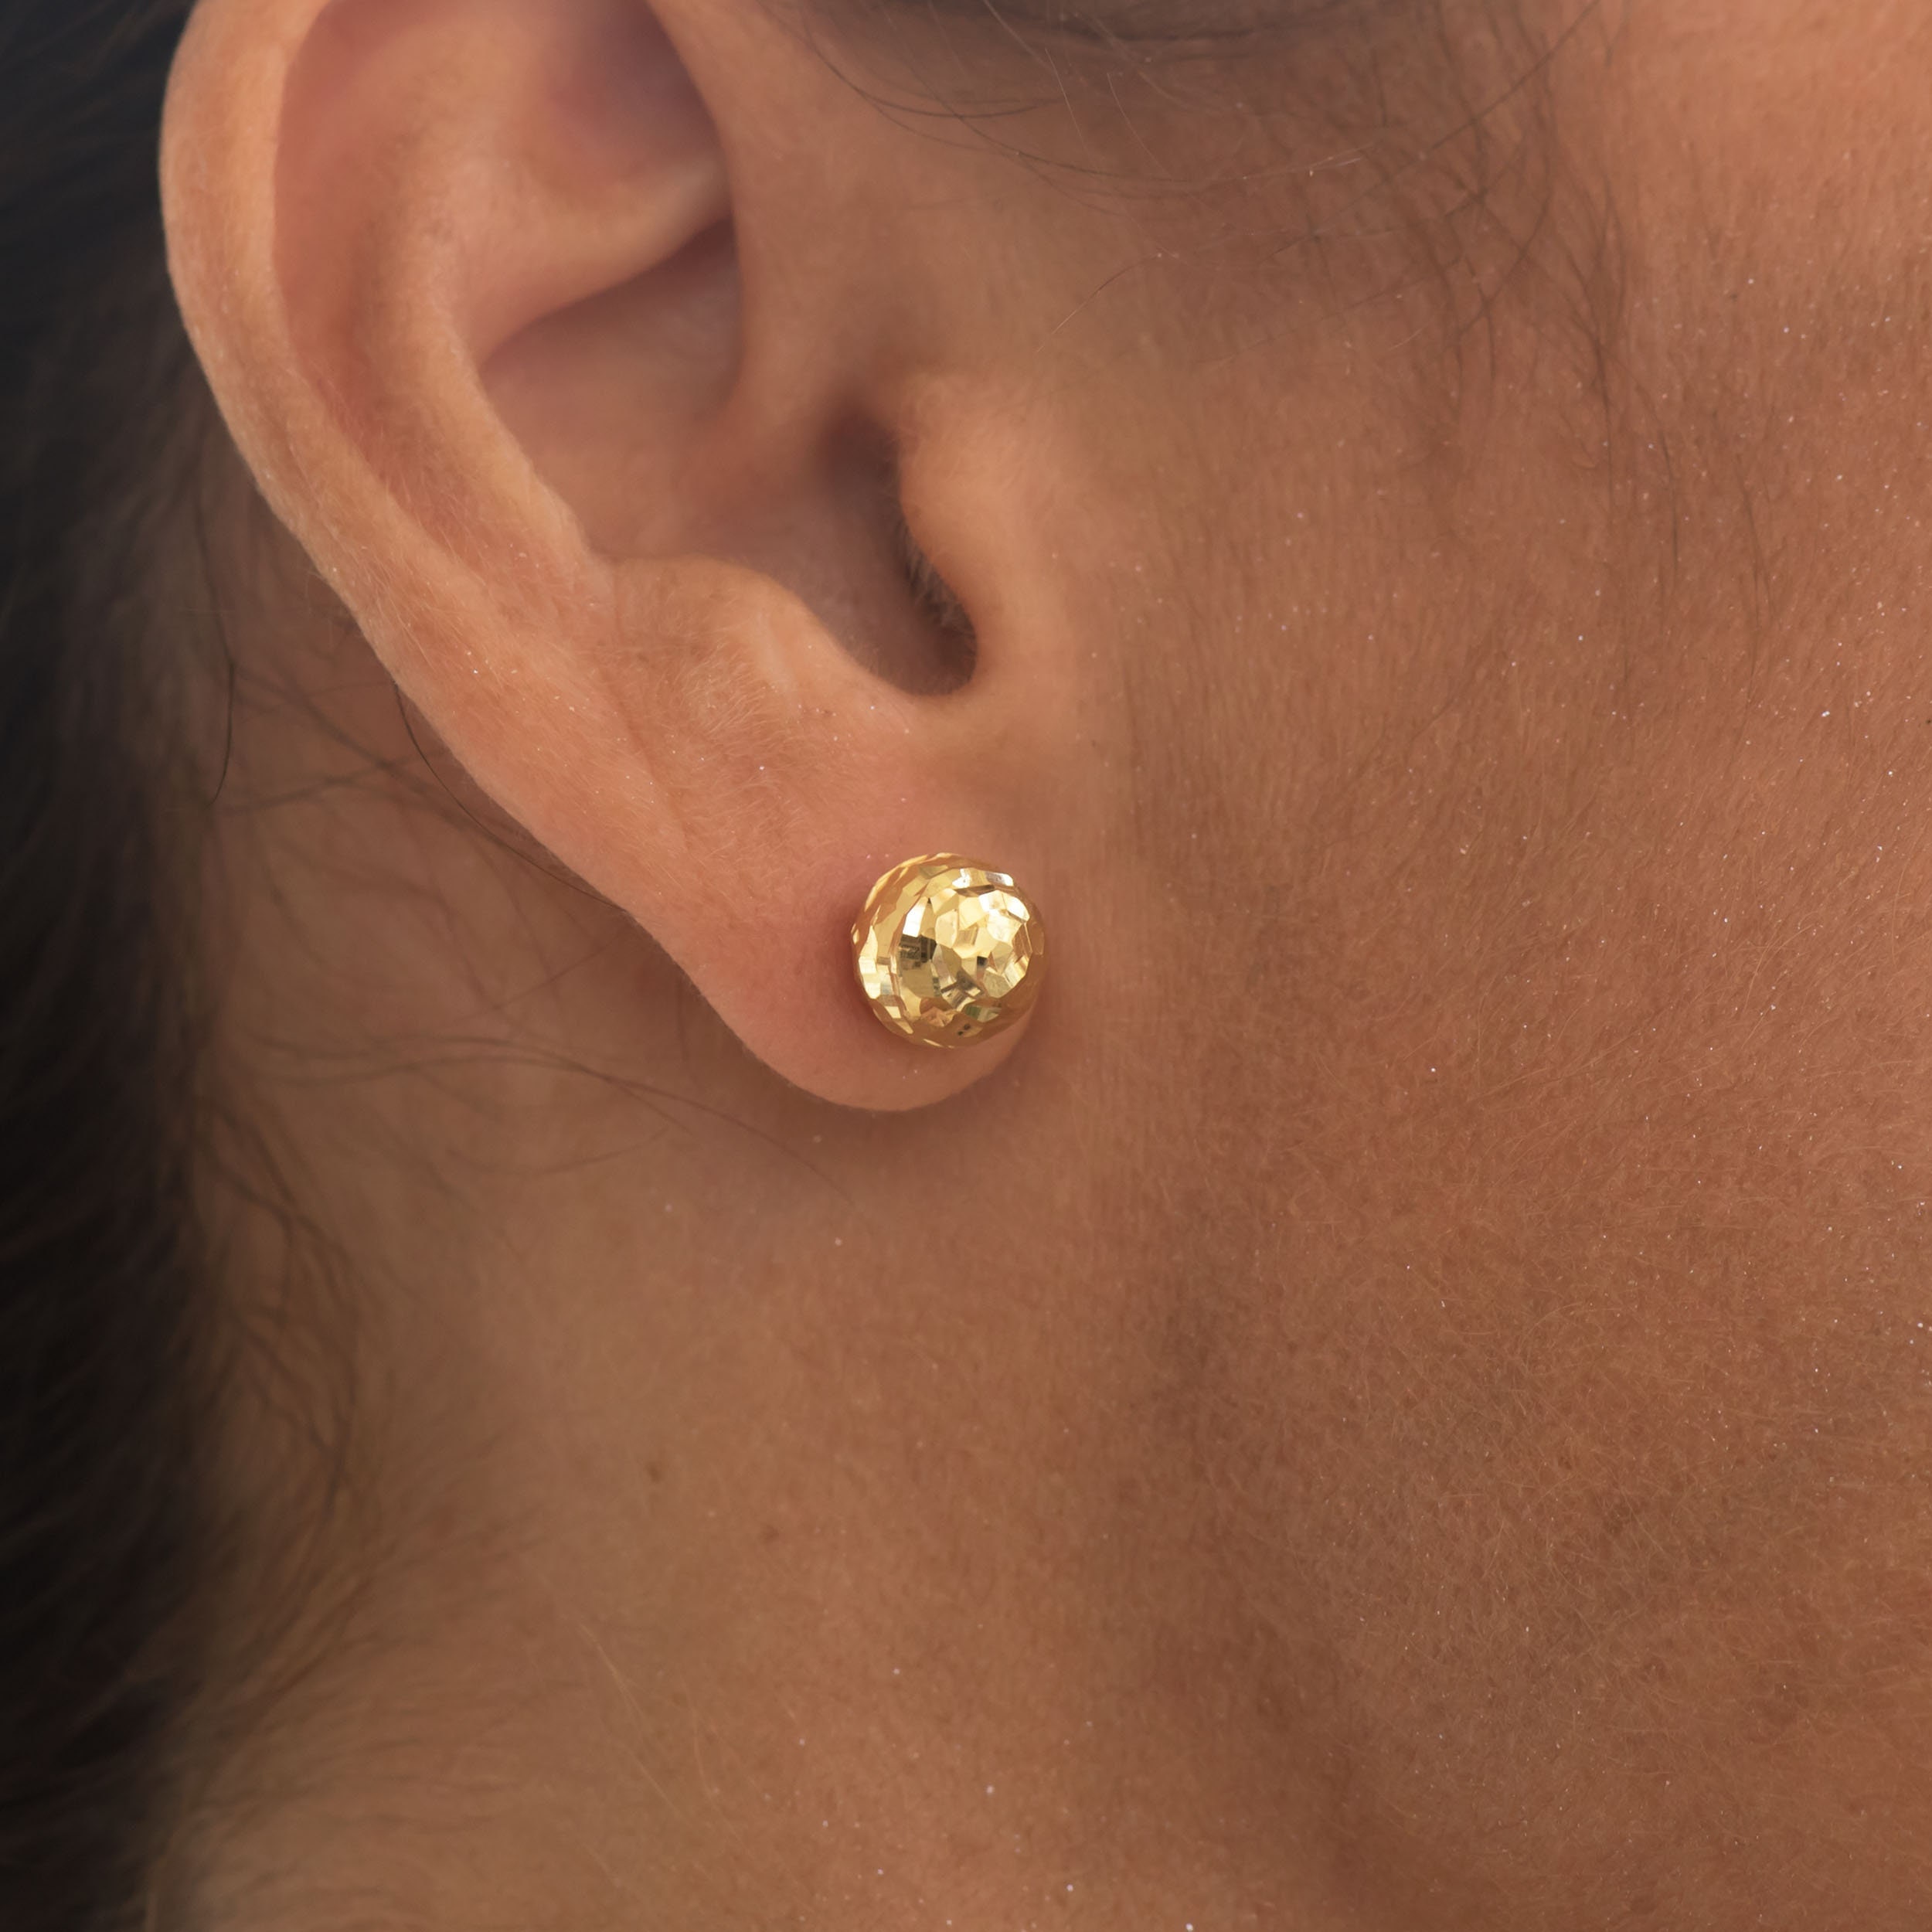 Gold ball earrings, gold dot earrings, gold studs, tiny ball earrings,  little gold ball studs, 14k gold filled ball stud earrings